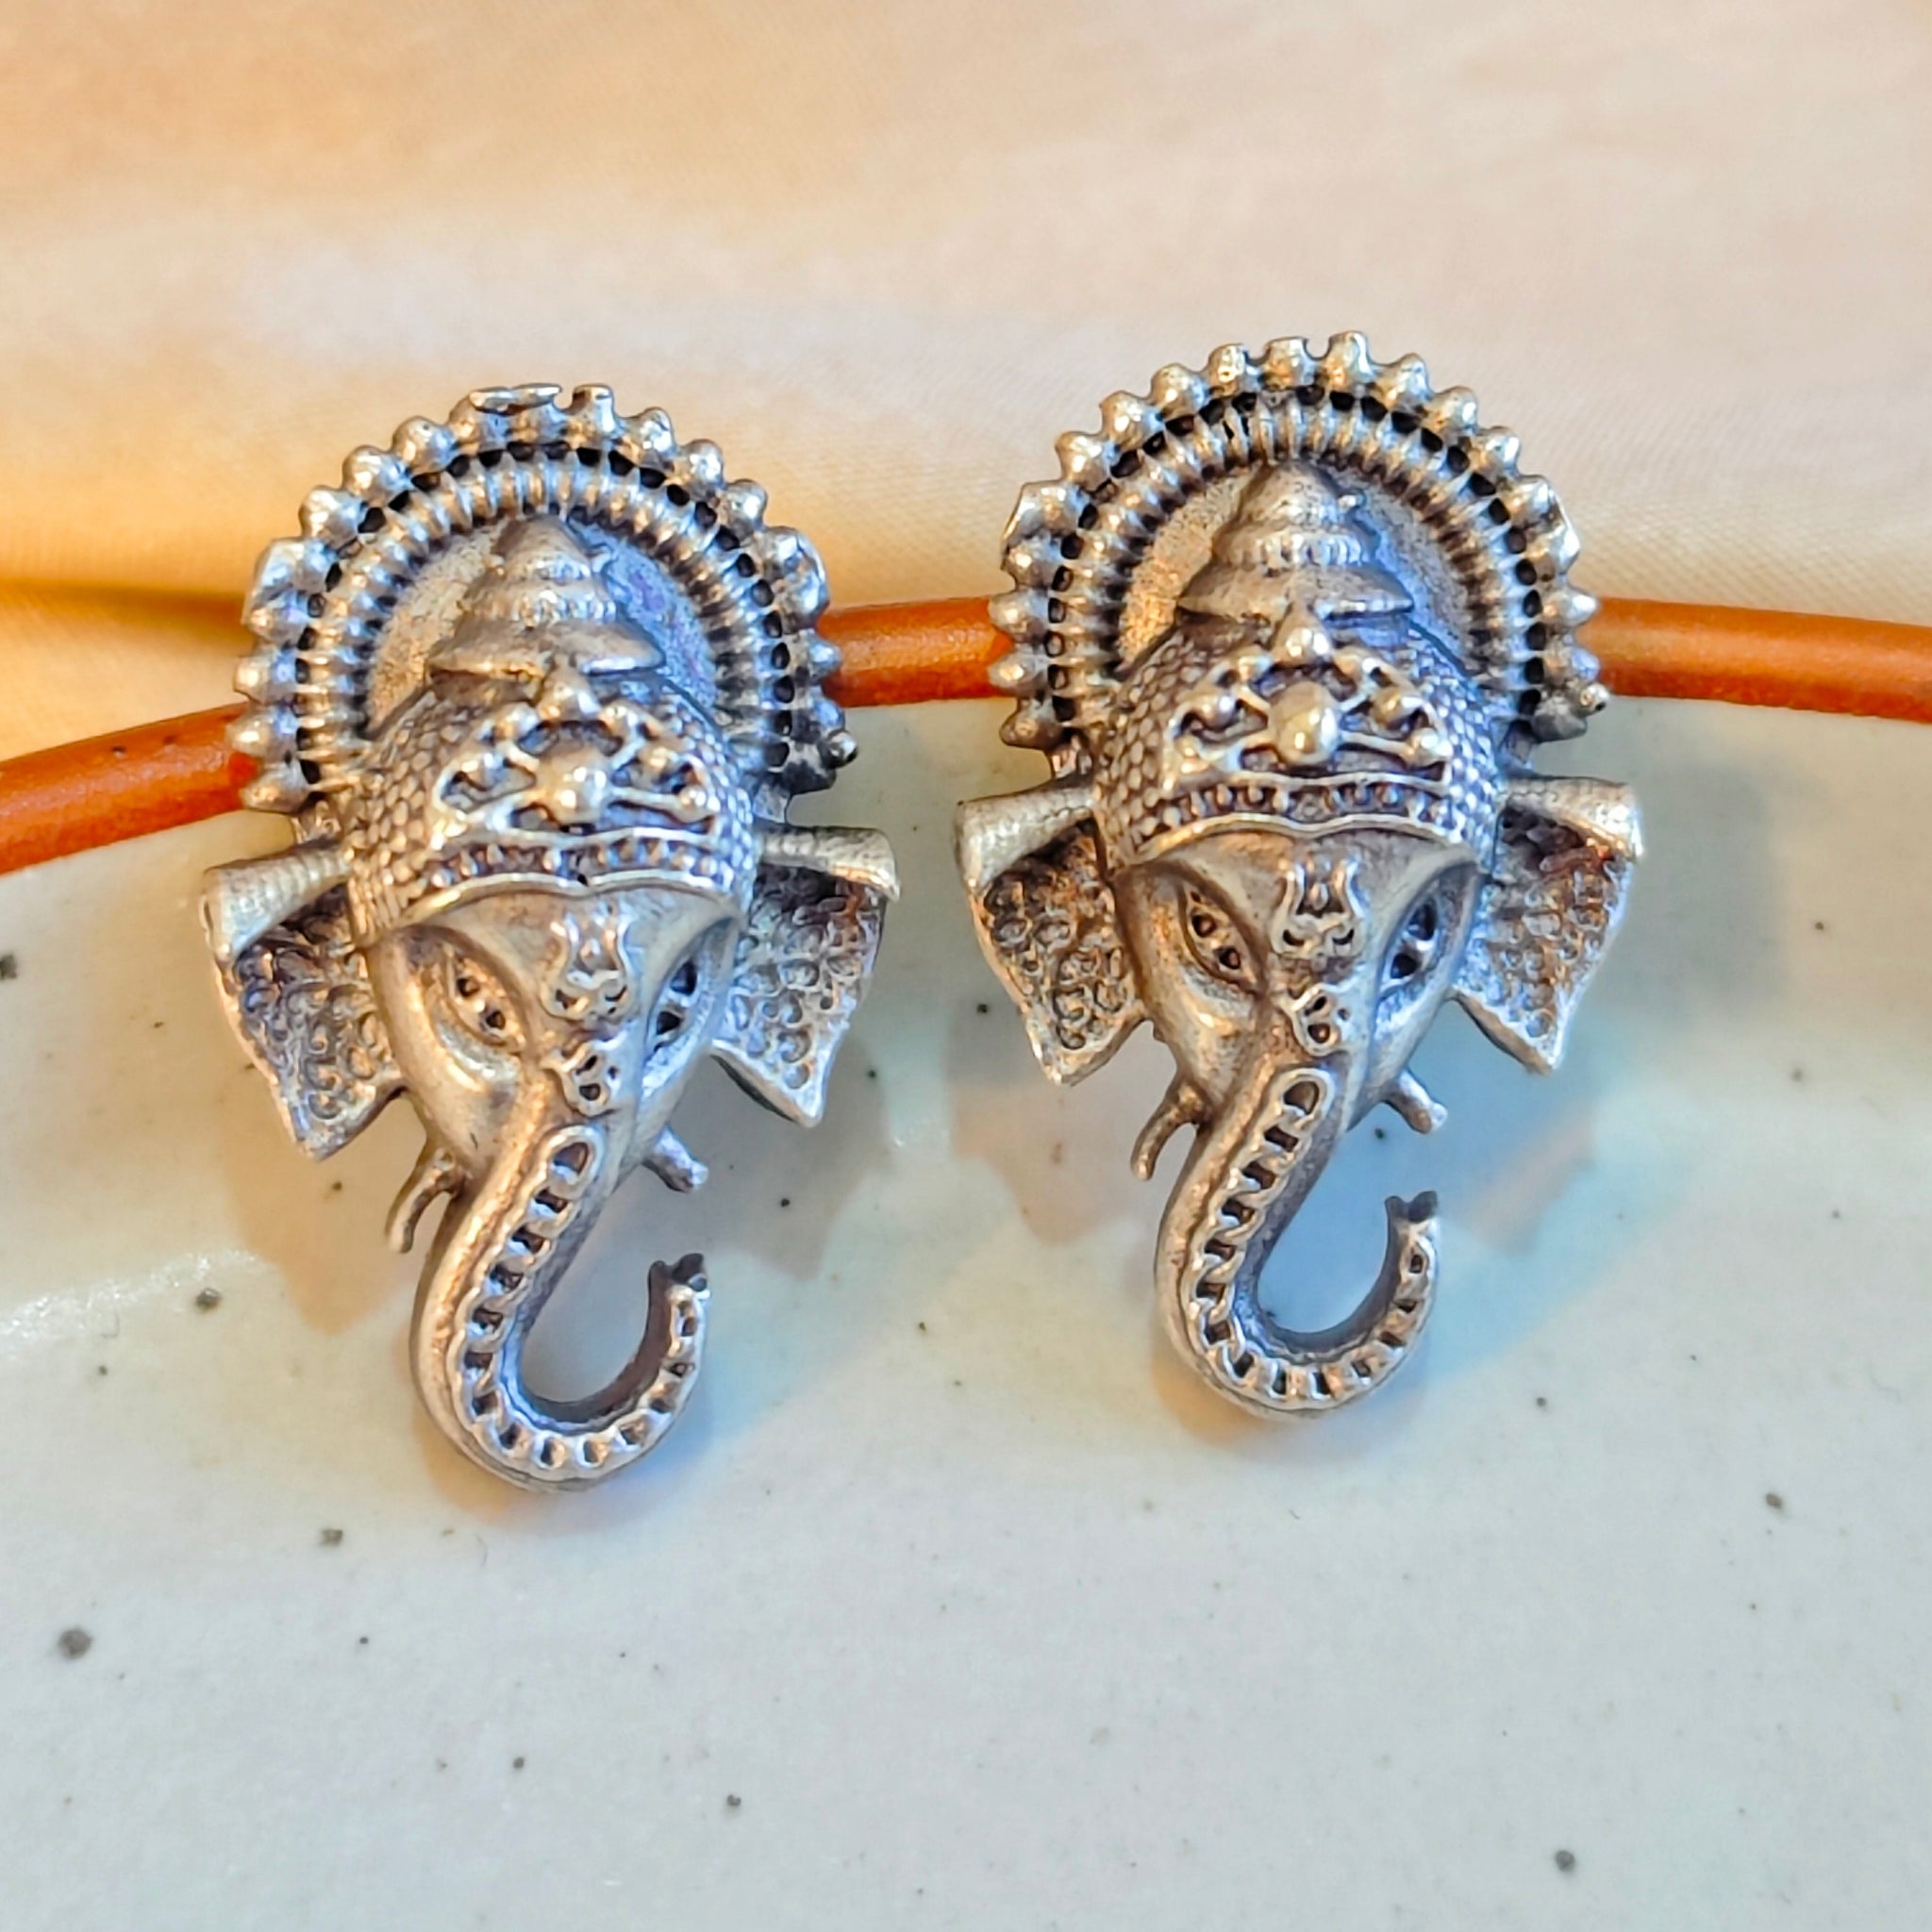 Mrigaya's Ganesha Earring set - Metallic